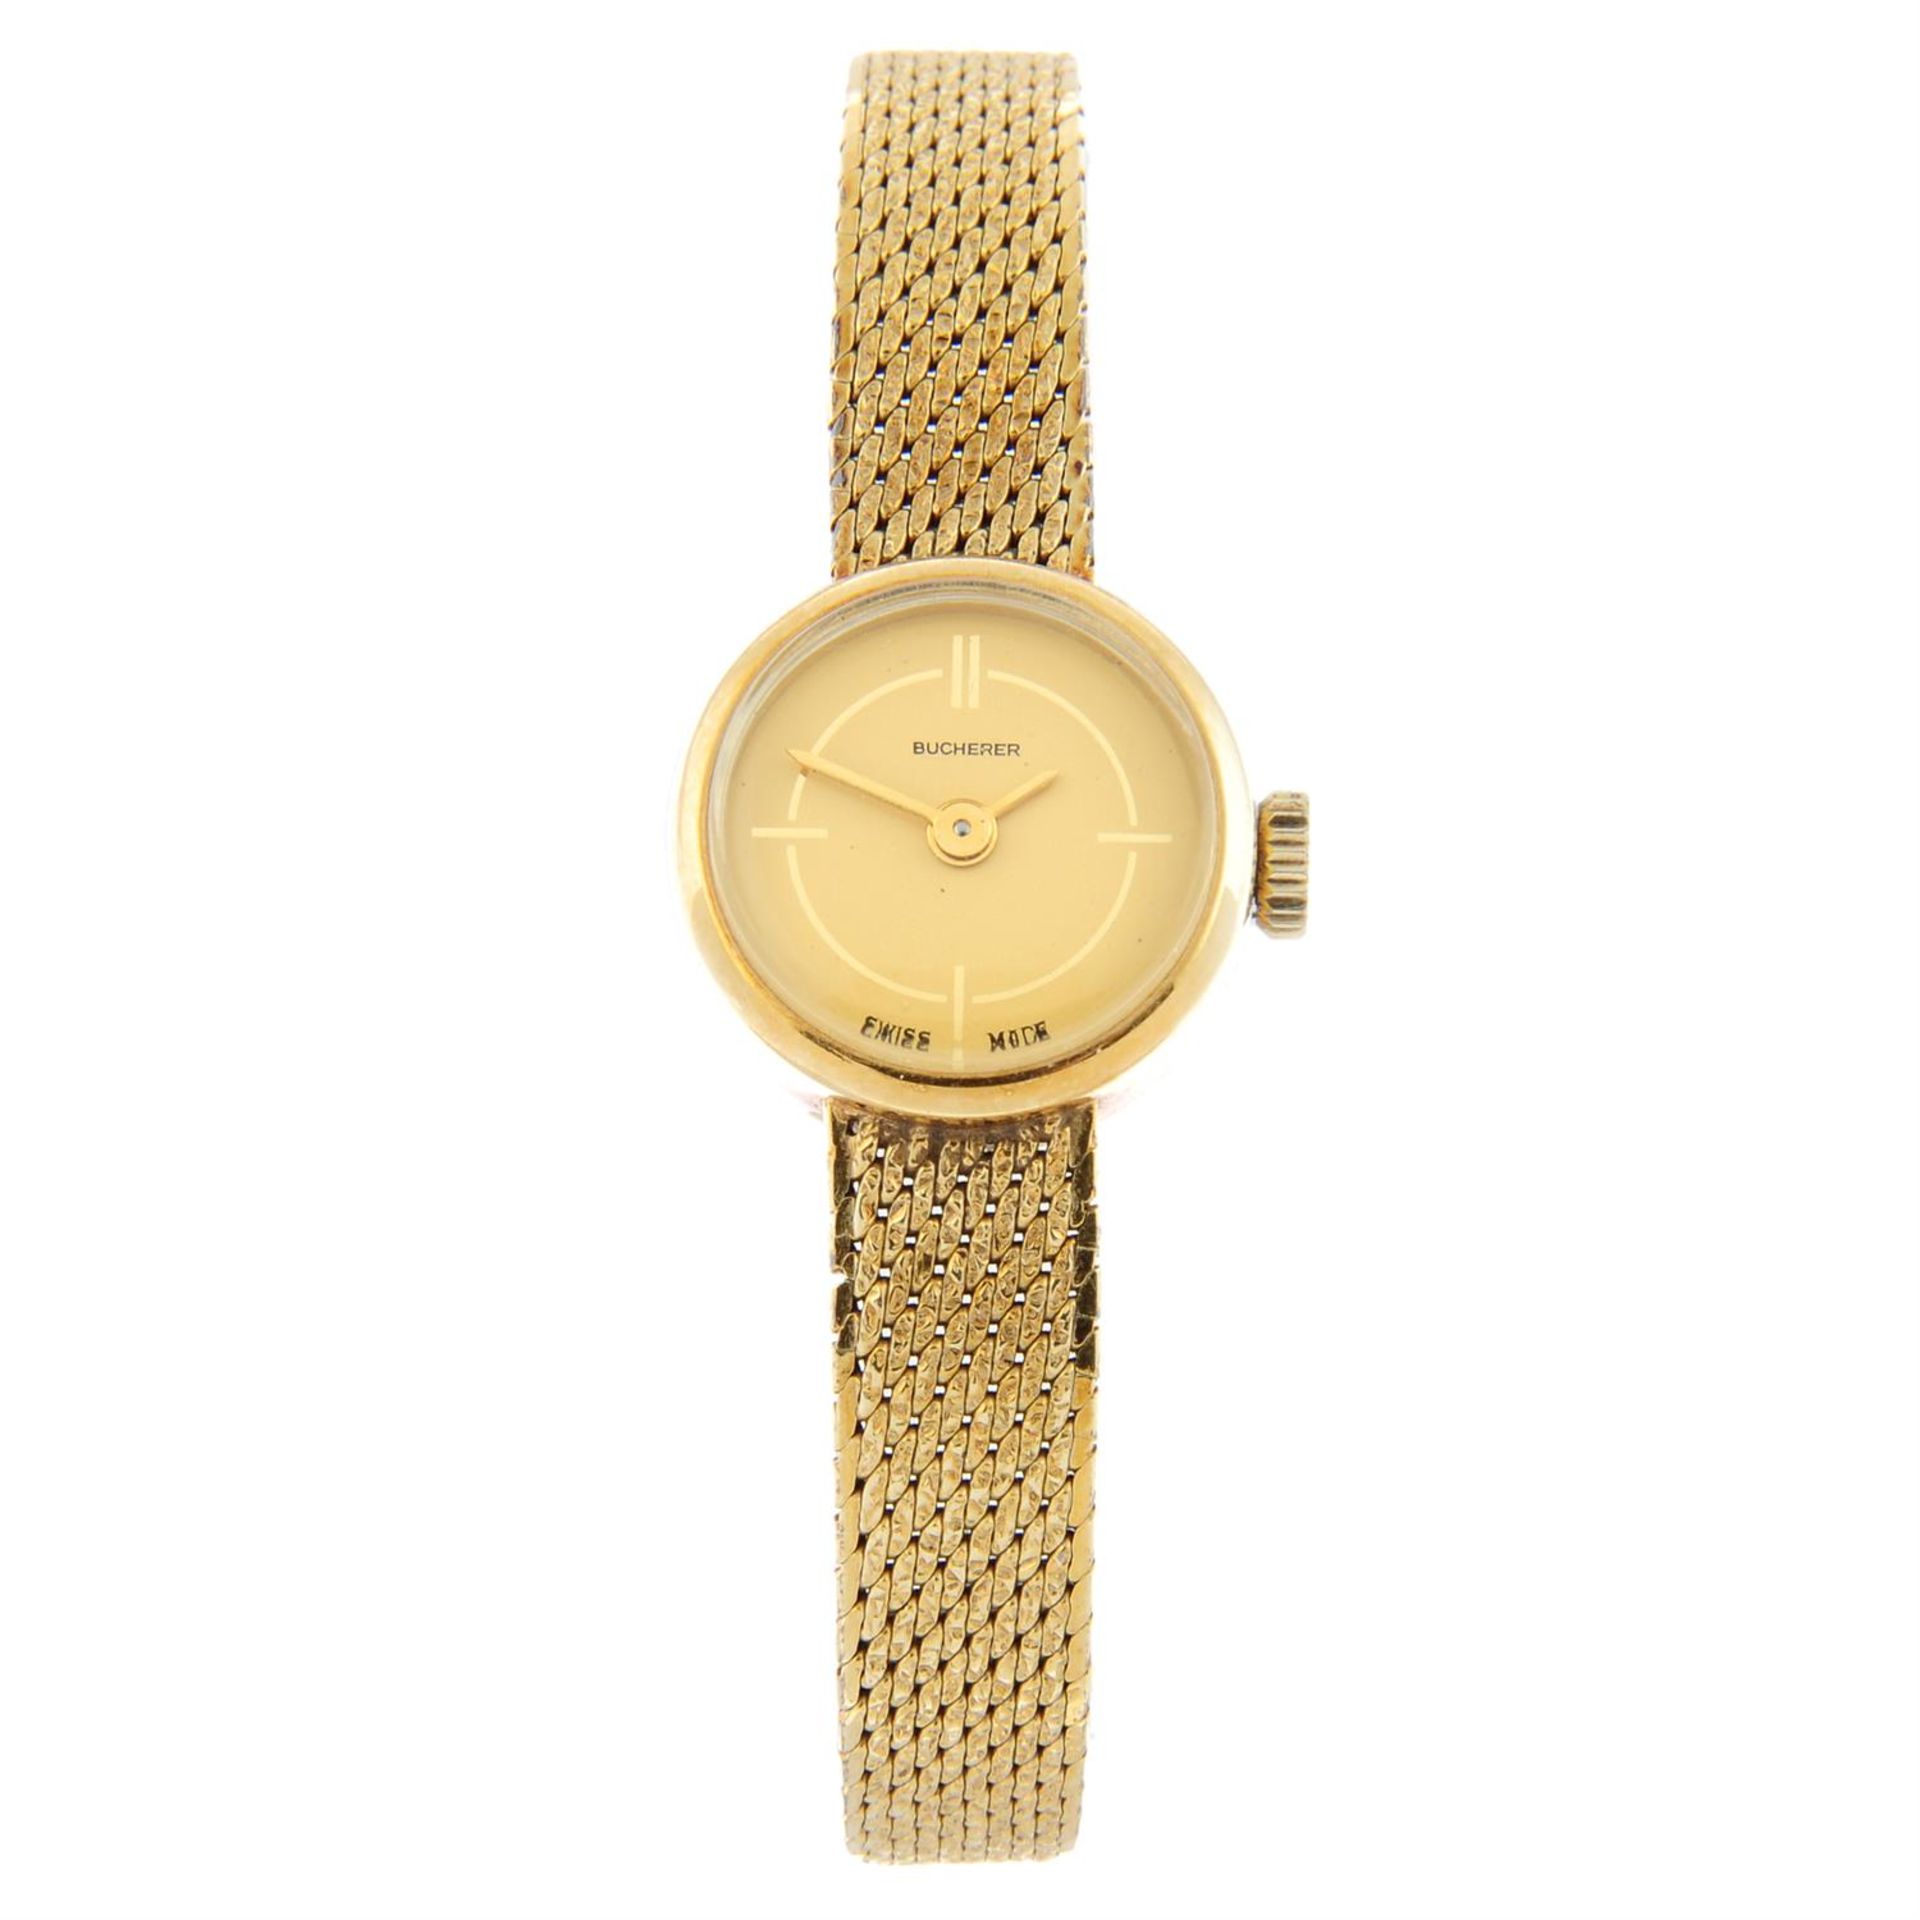 BUCHERER - a yellow metal bracelet watch, 15mm.